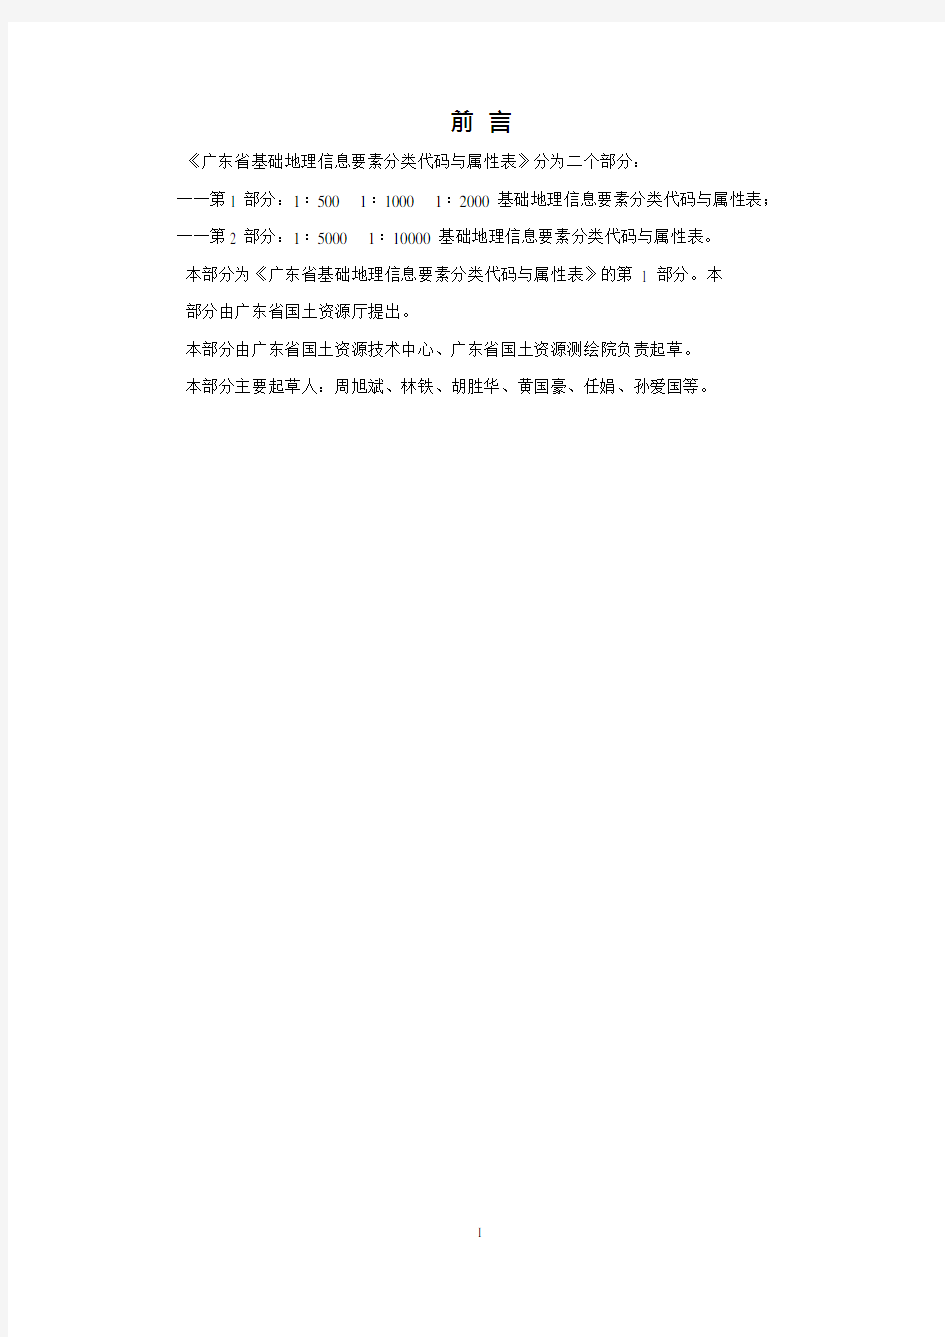 广东省1：500 1：1000 1：2000基础地理信息要素分类代码与属性表(试行)2011011